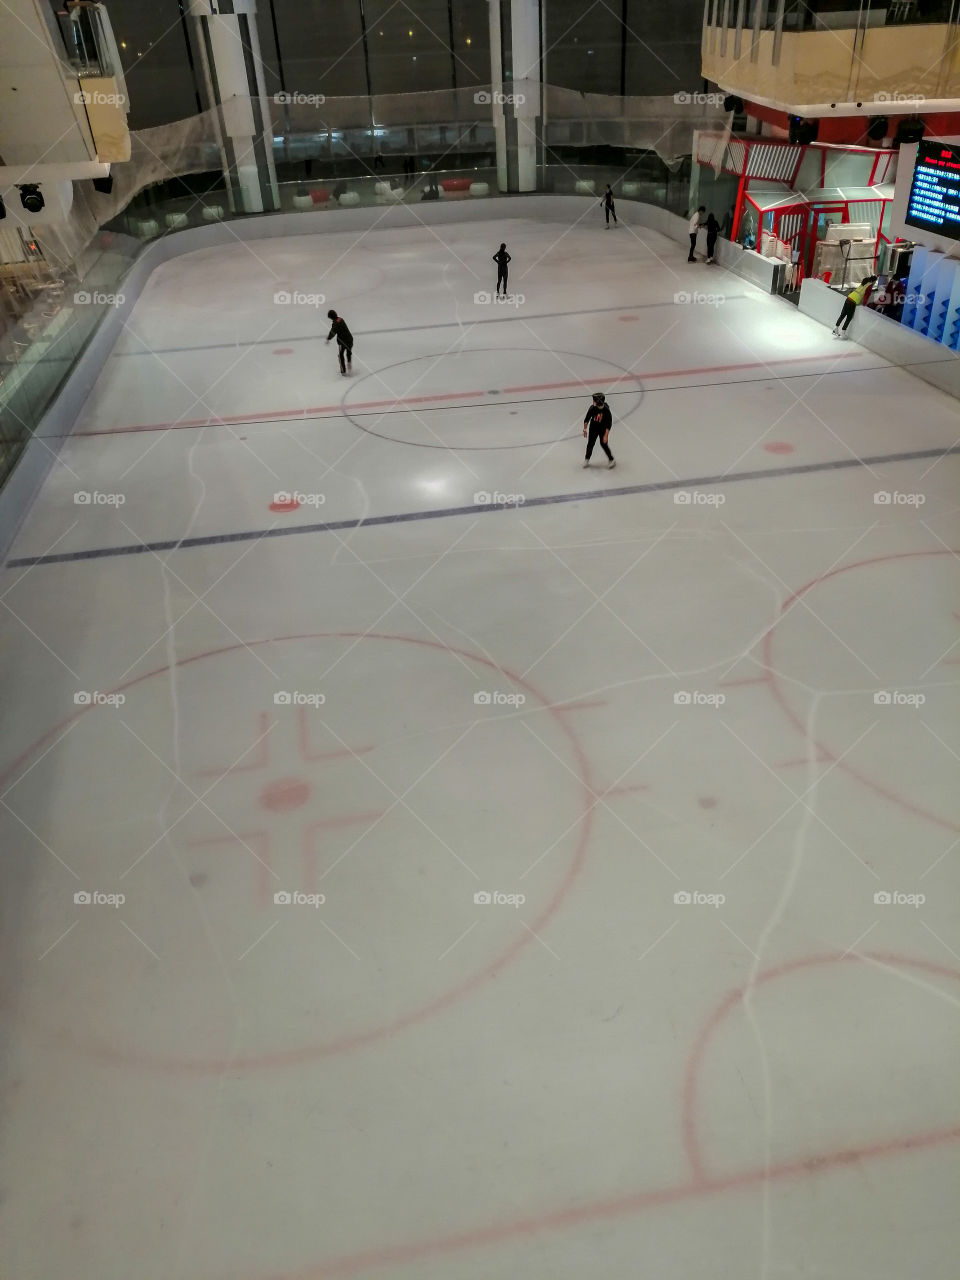 The ice skating rink at The Elements, Hong Kong